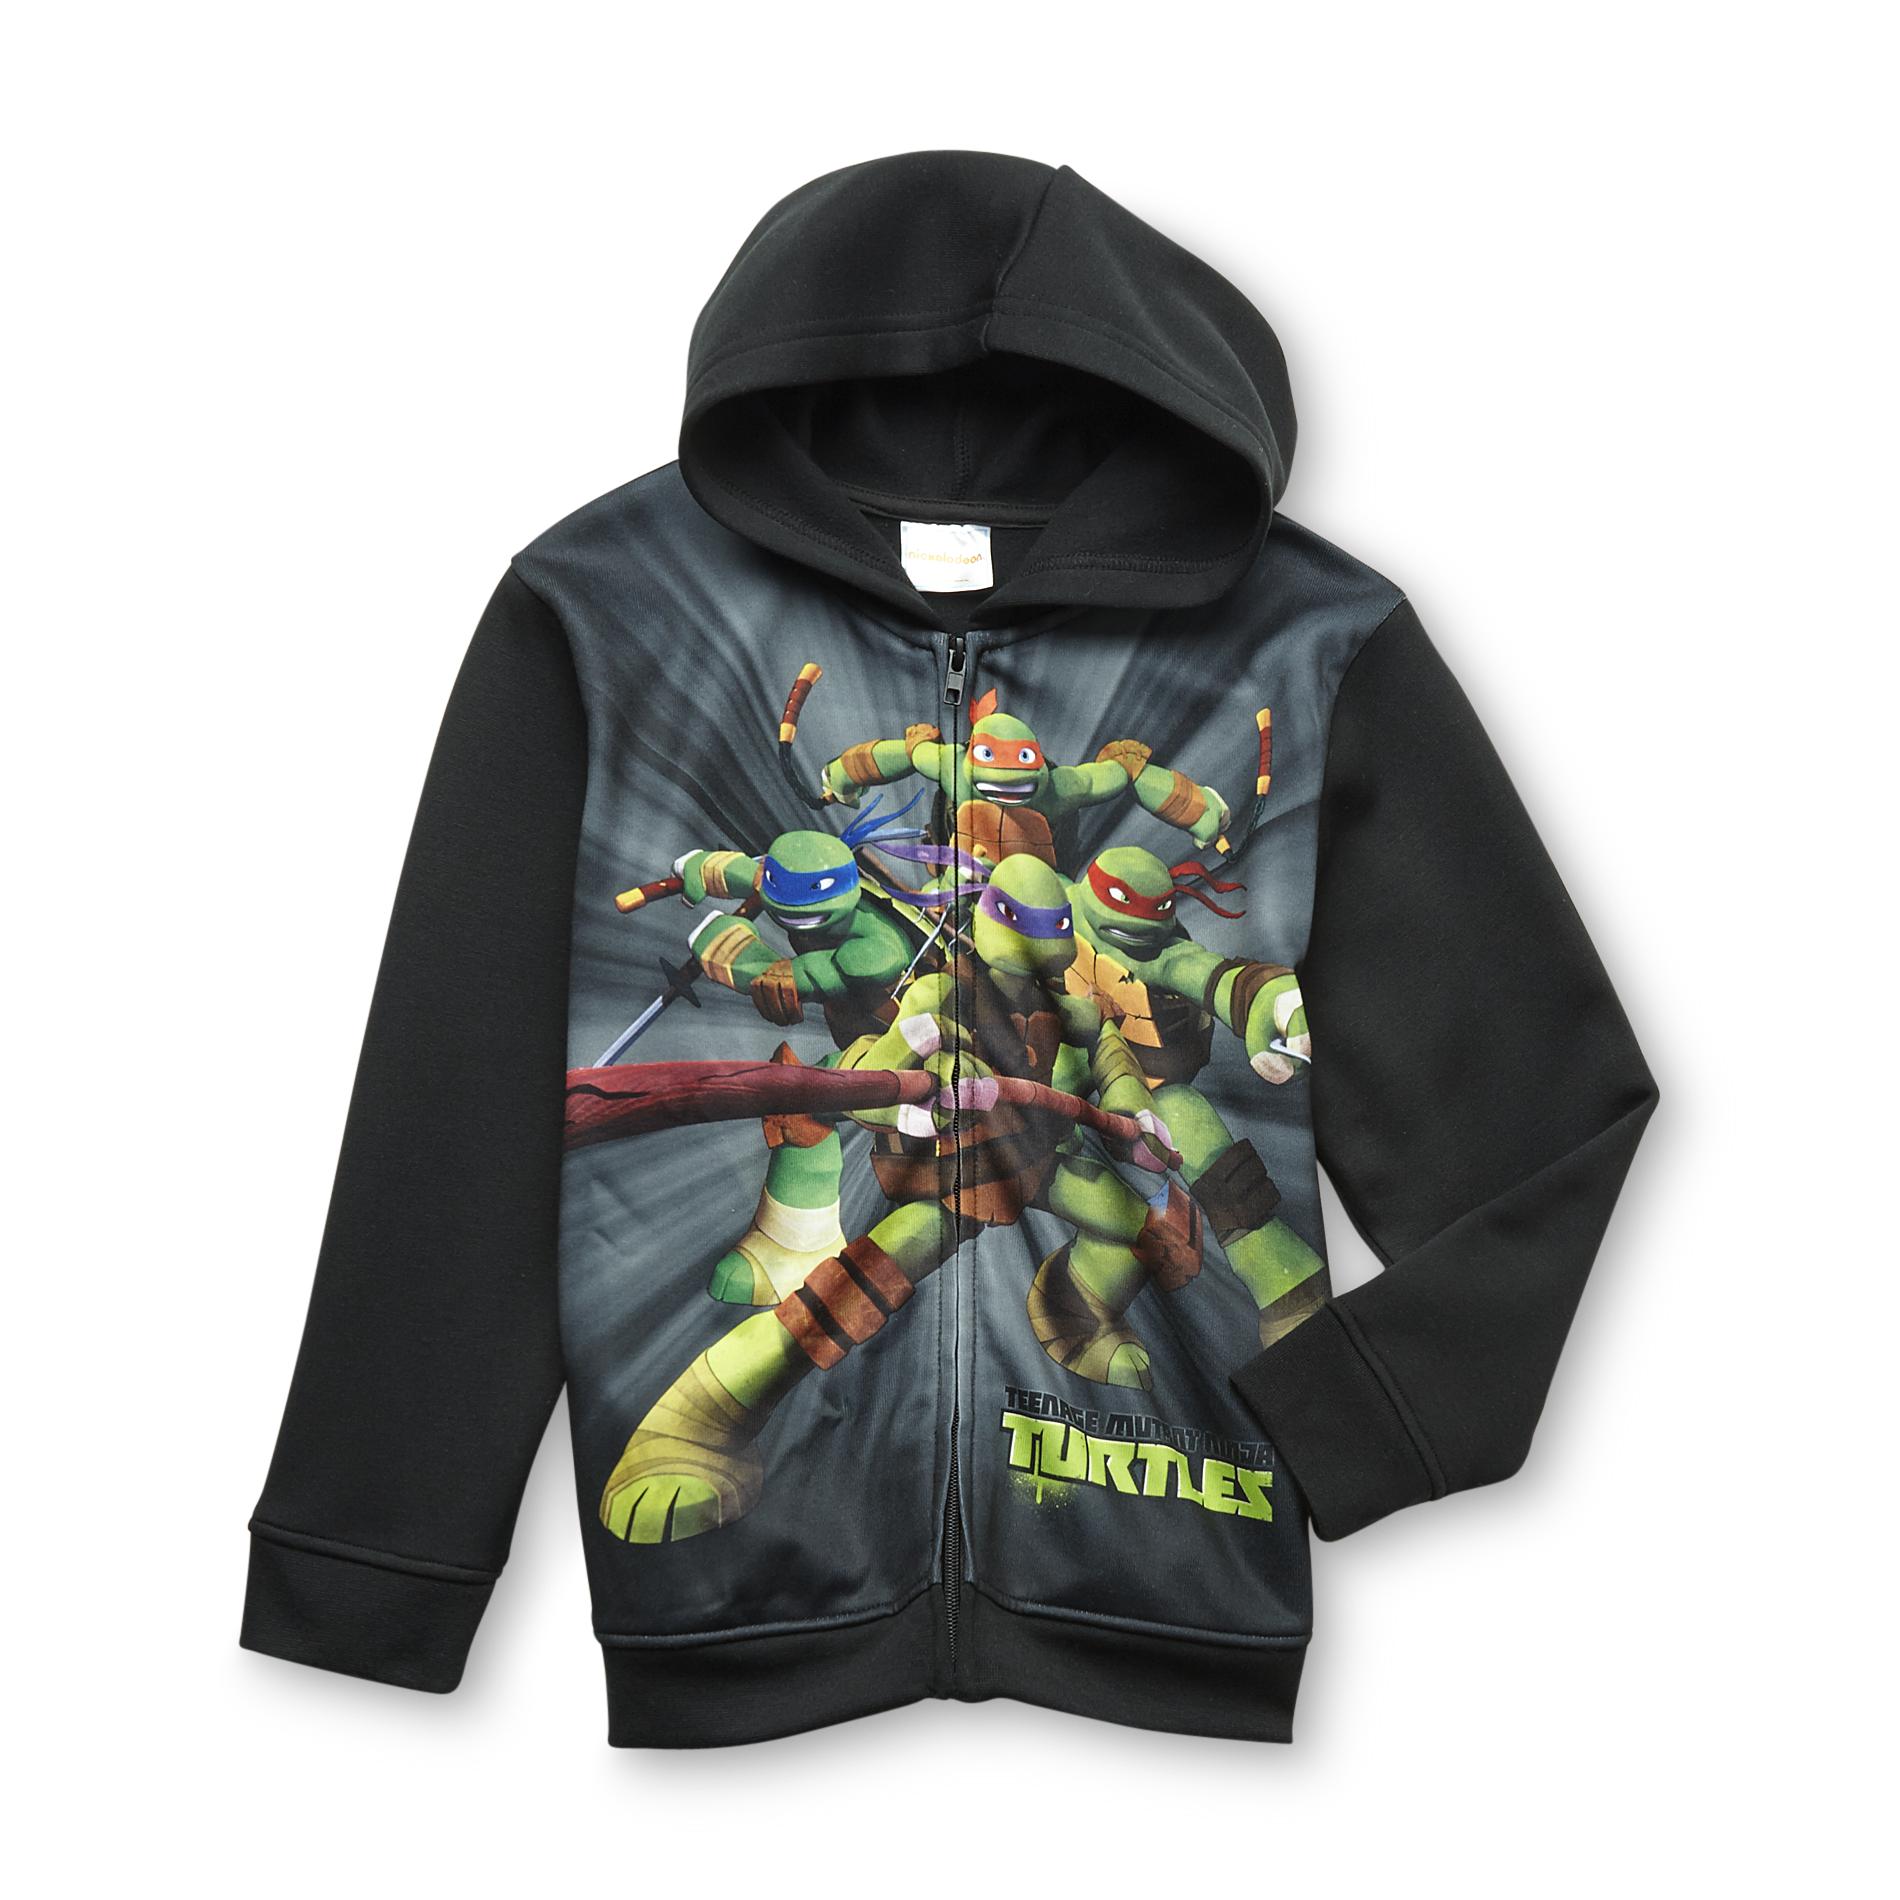 Nickelodeon Teenage Mutant Ninja Turtles Boy's Hoodie Jacket